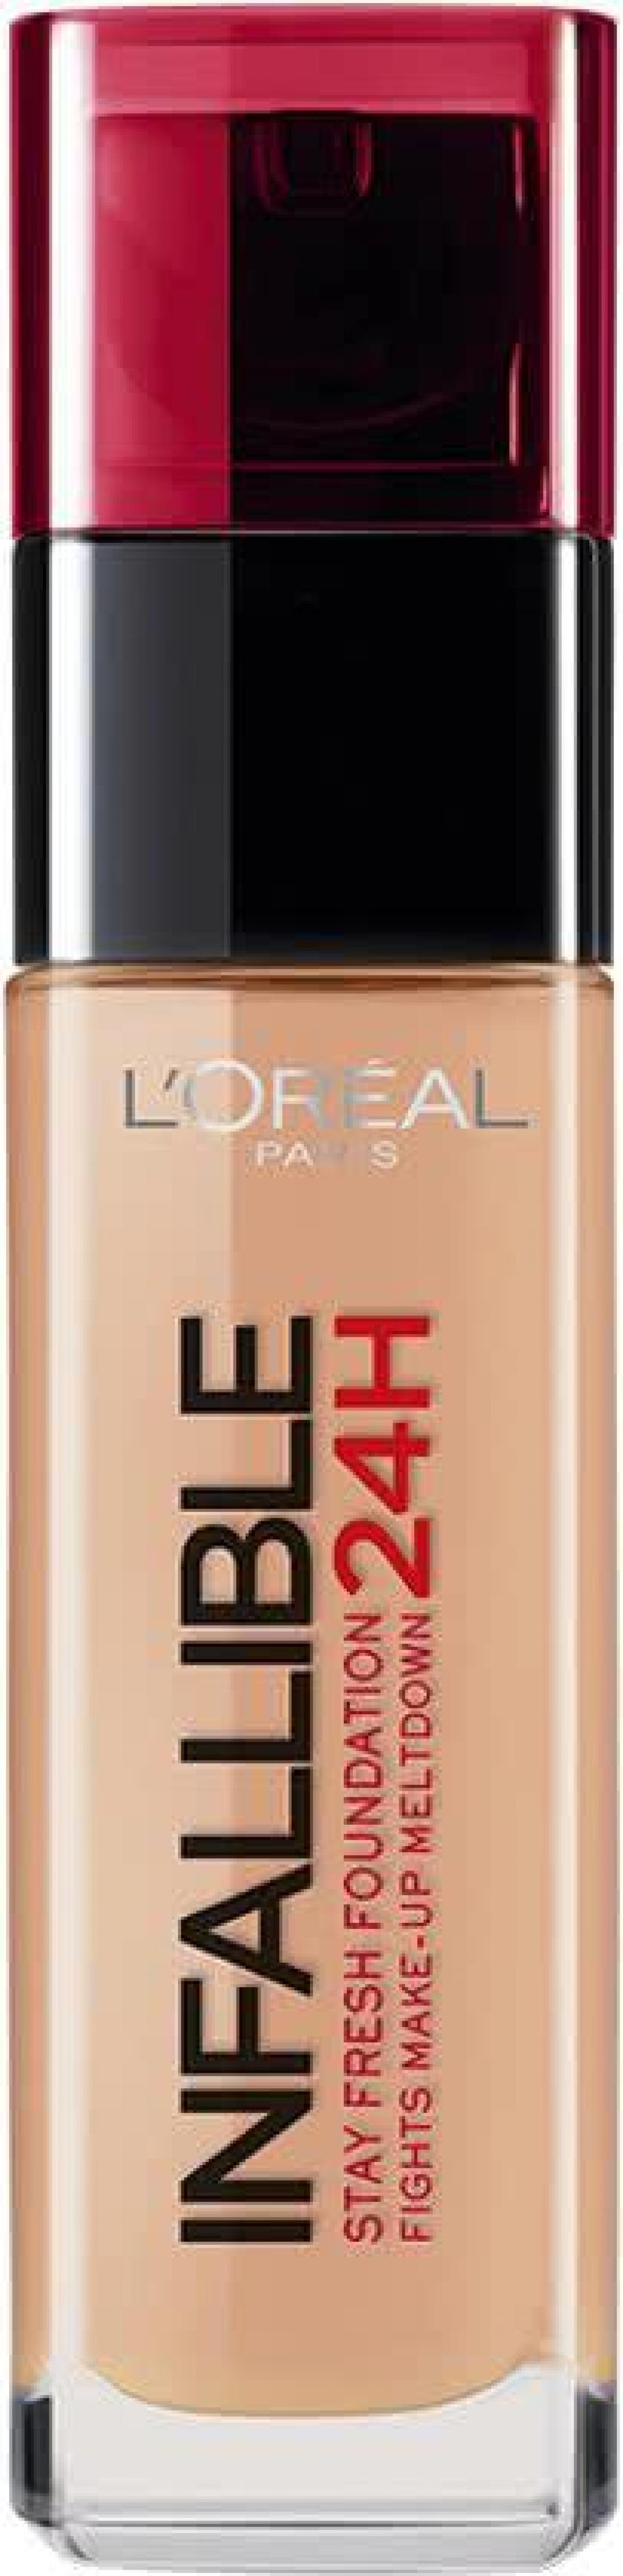 L'Oréal - Infaillible 24 H foundation